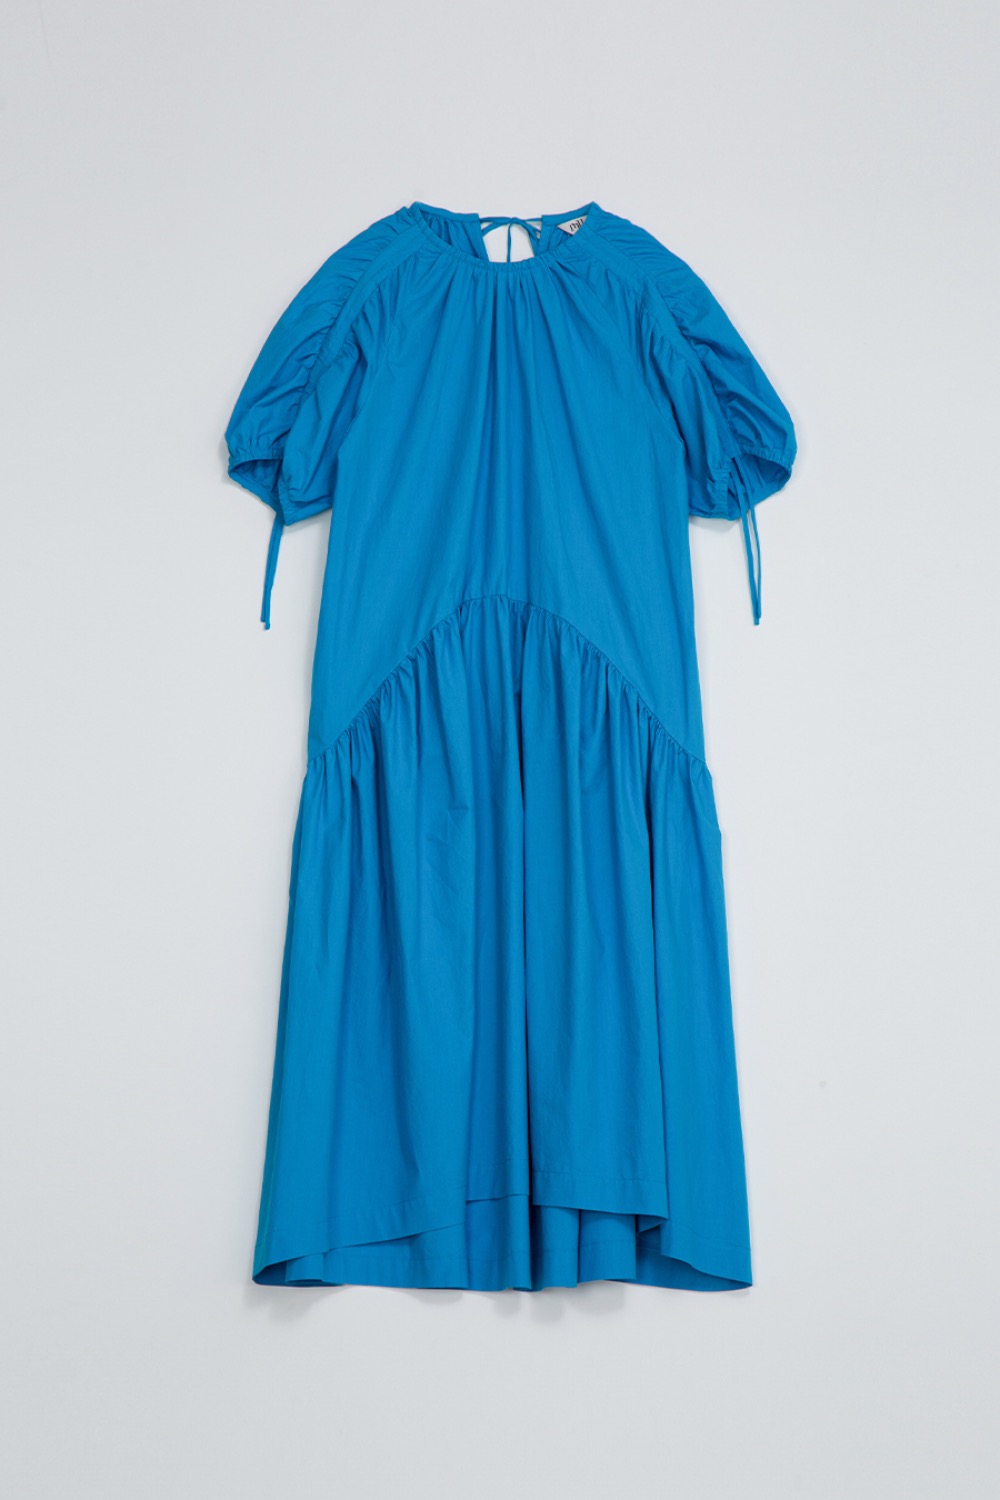 BELLE LUCING DRESS - AQUA BLUE COTTON